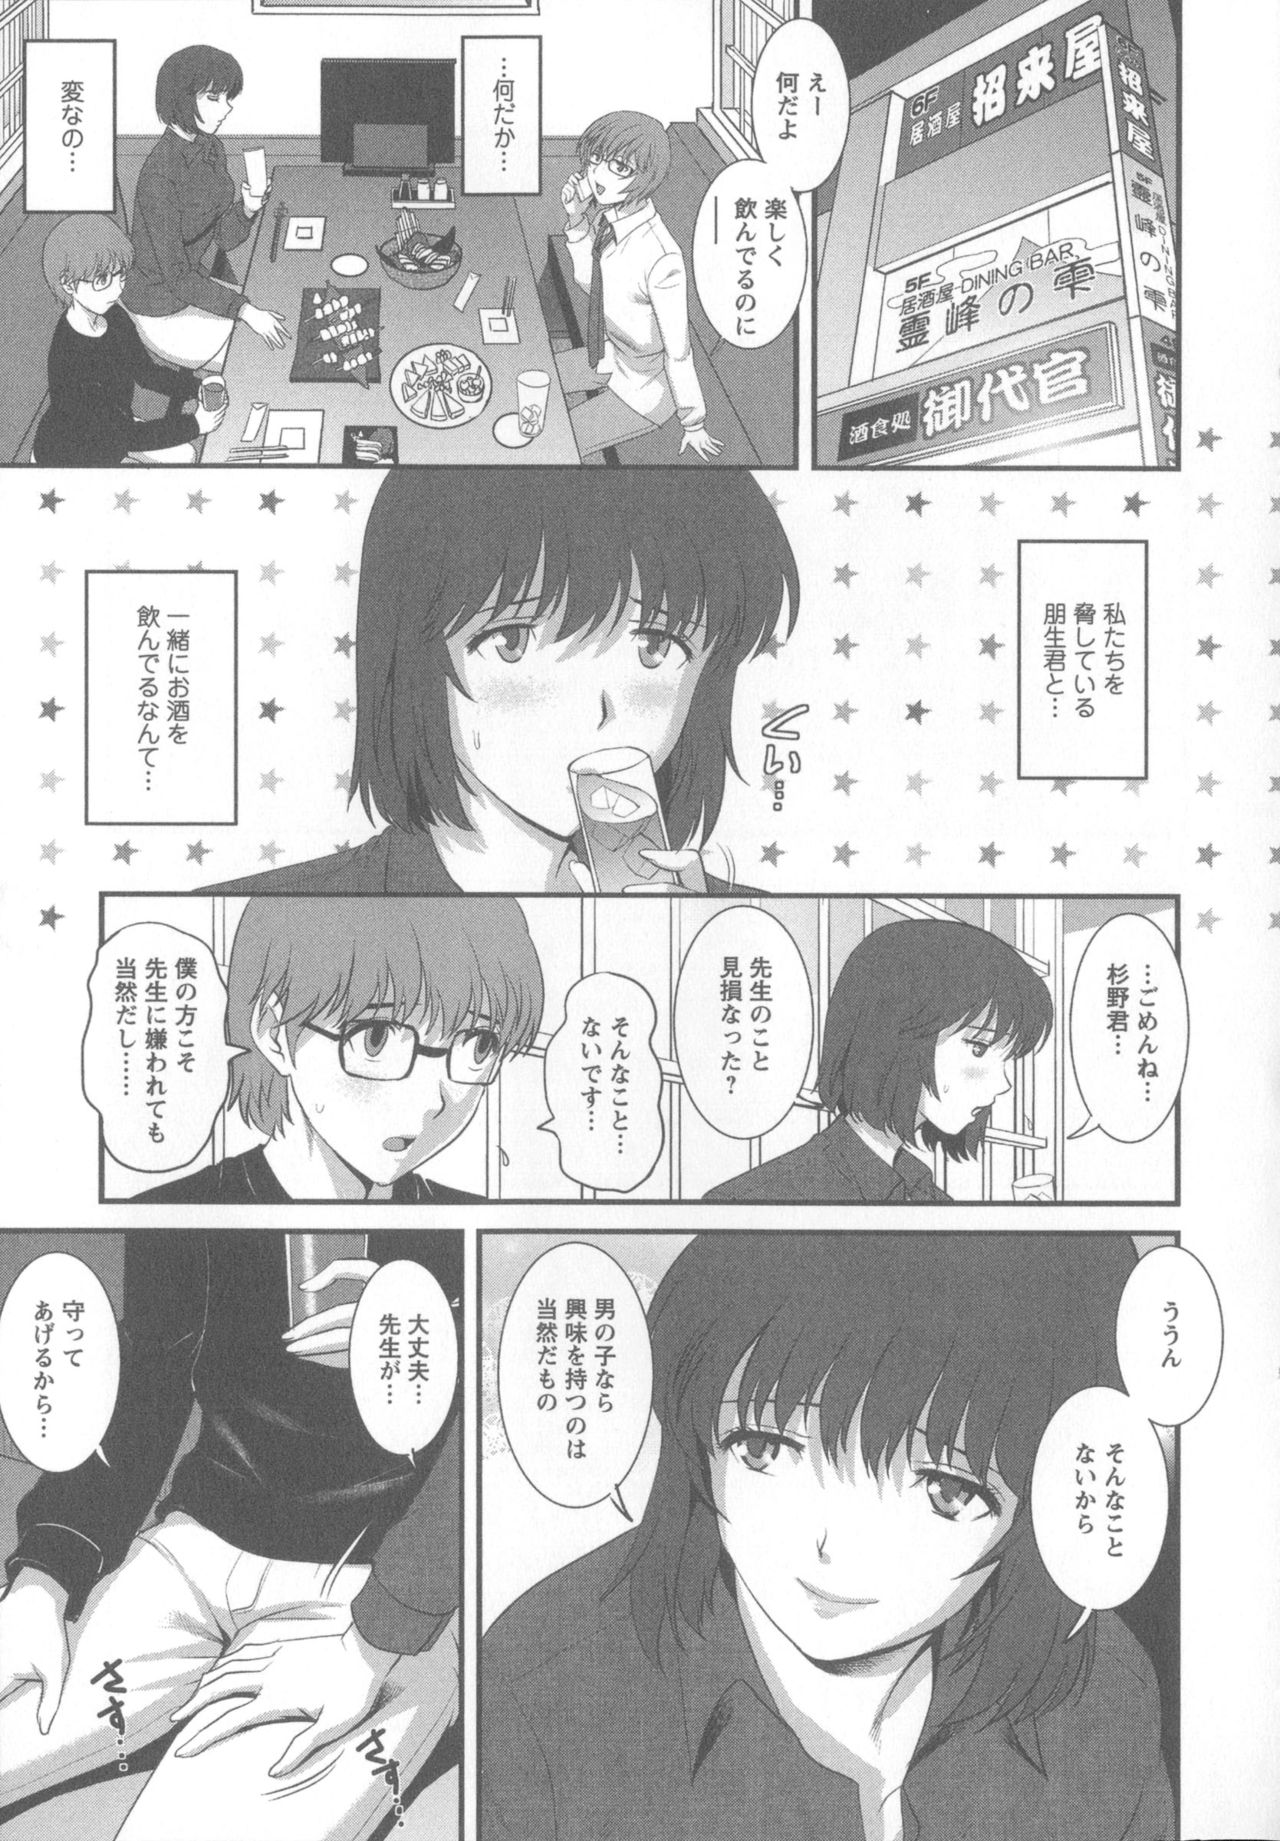 [Saigado] Hitoduma Onnakyoshi Main-san 1 [彩画堂] 人妻女教師まいんさん 1  +  イラストカード